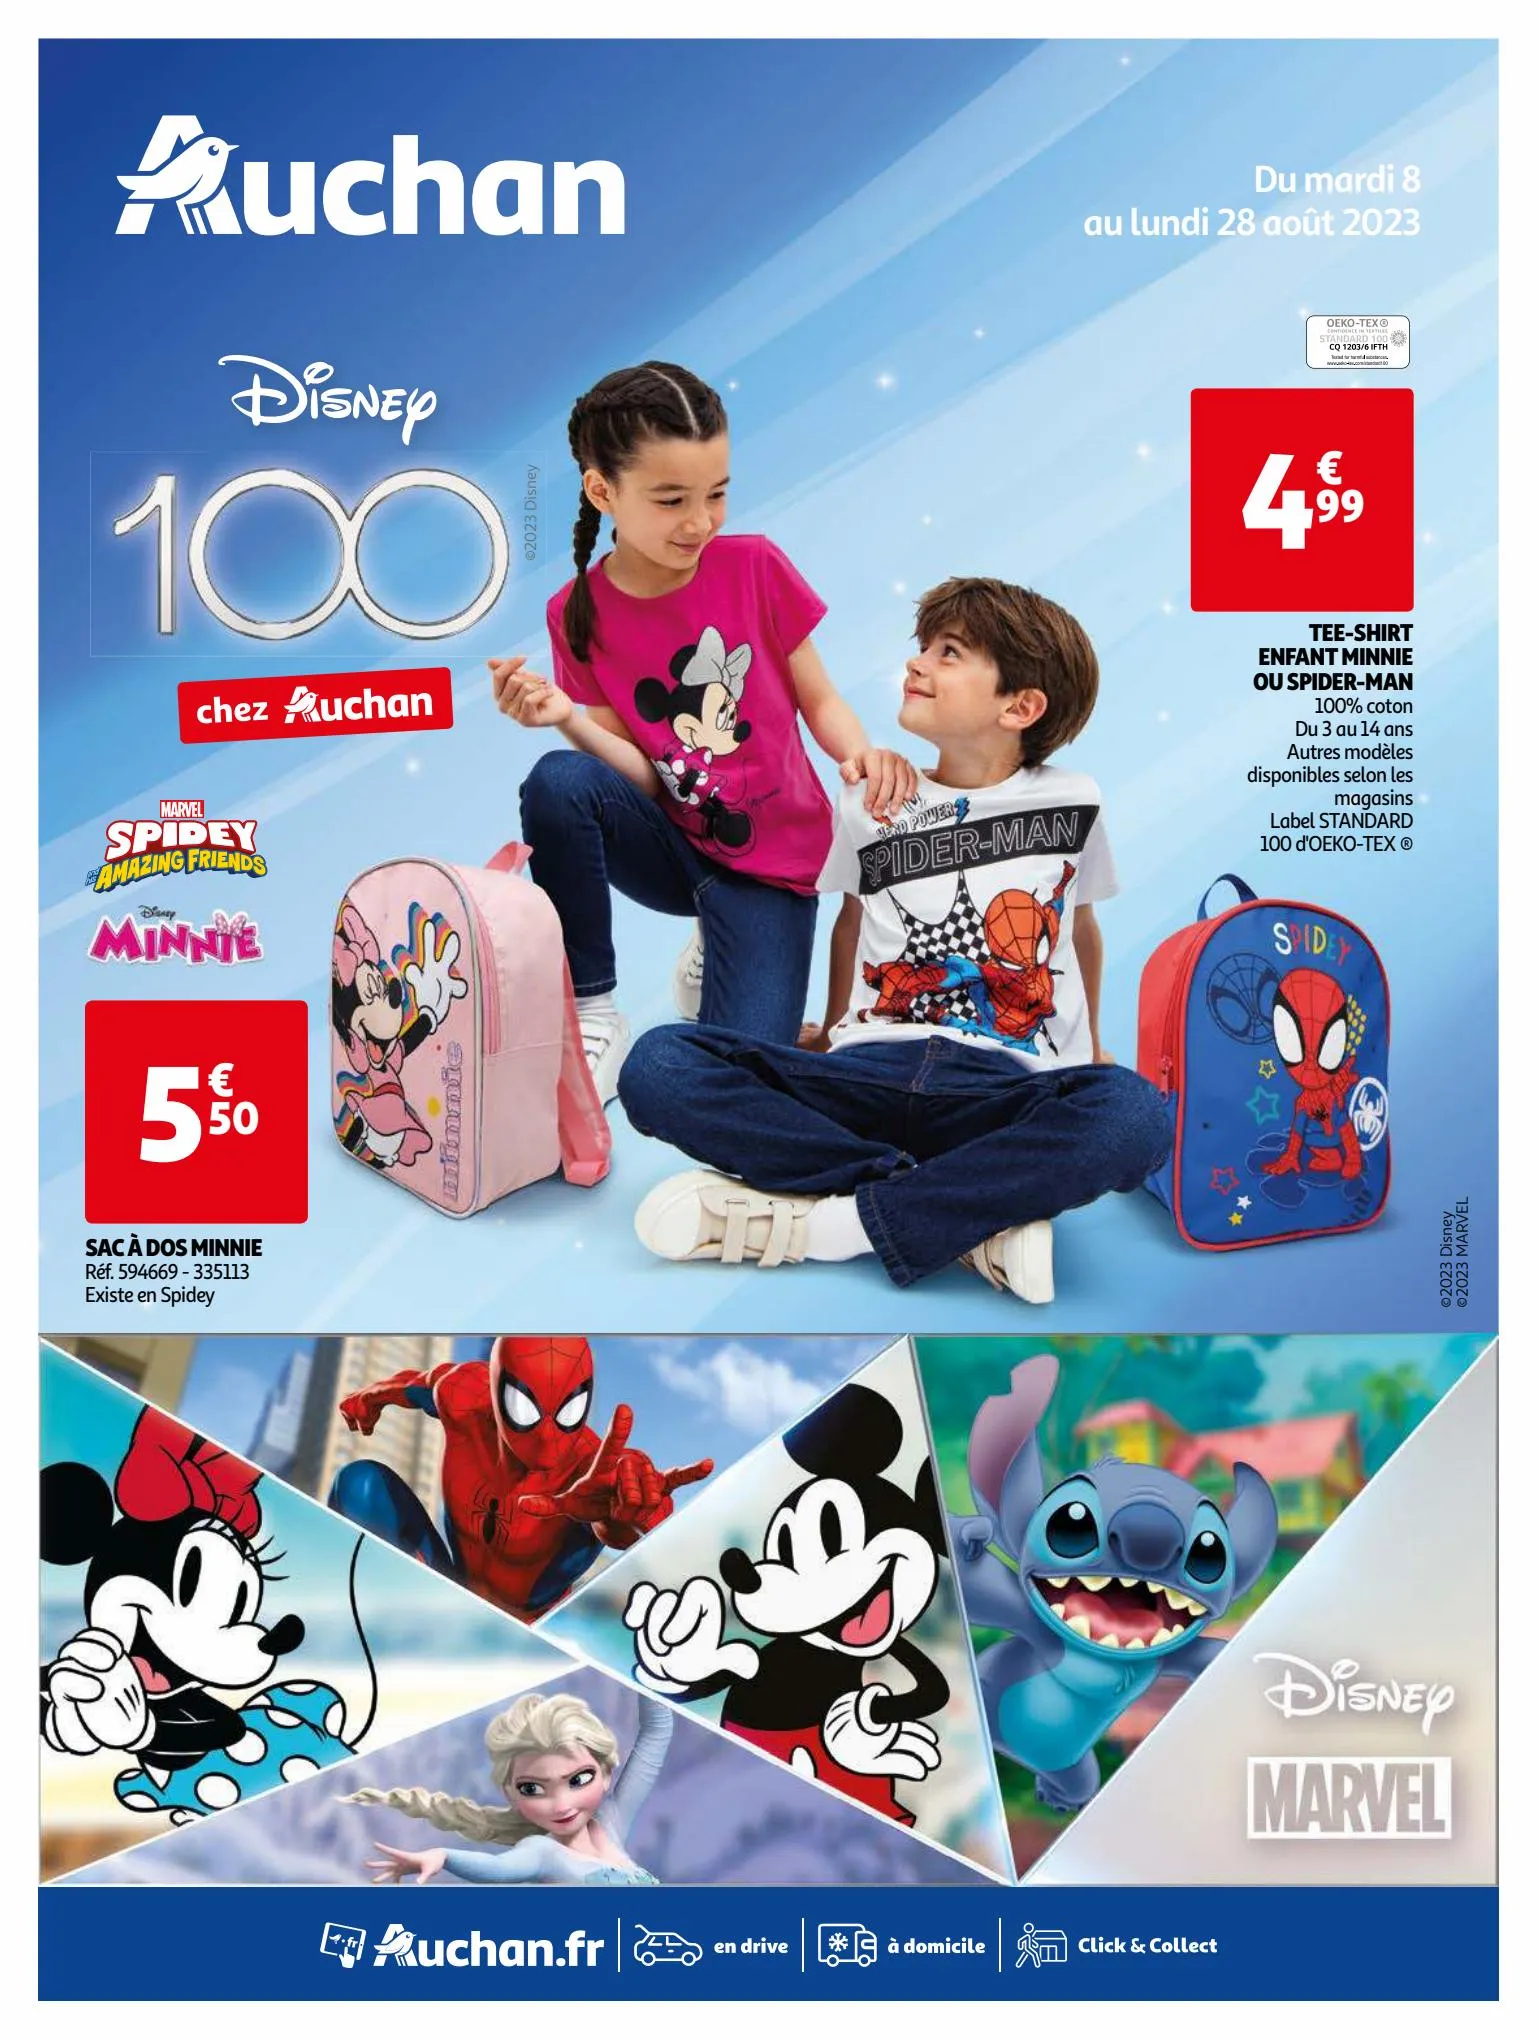 Catalogue Disney 100 chez Auchan, page 00001